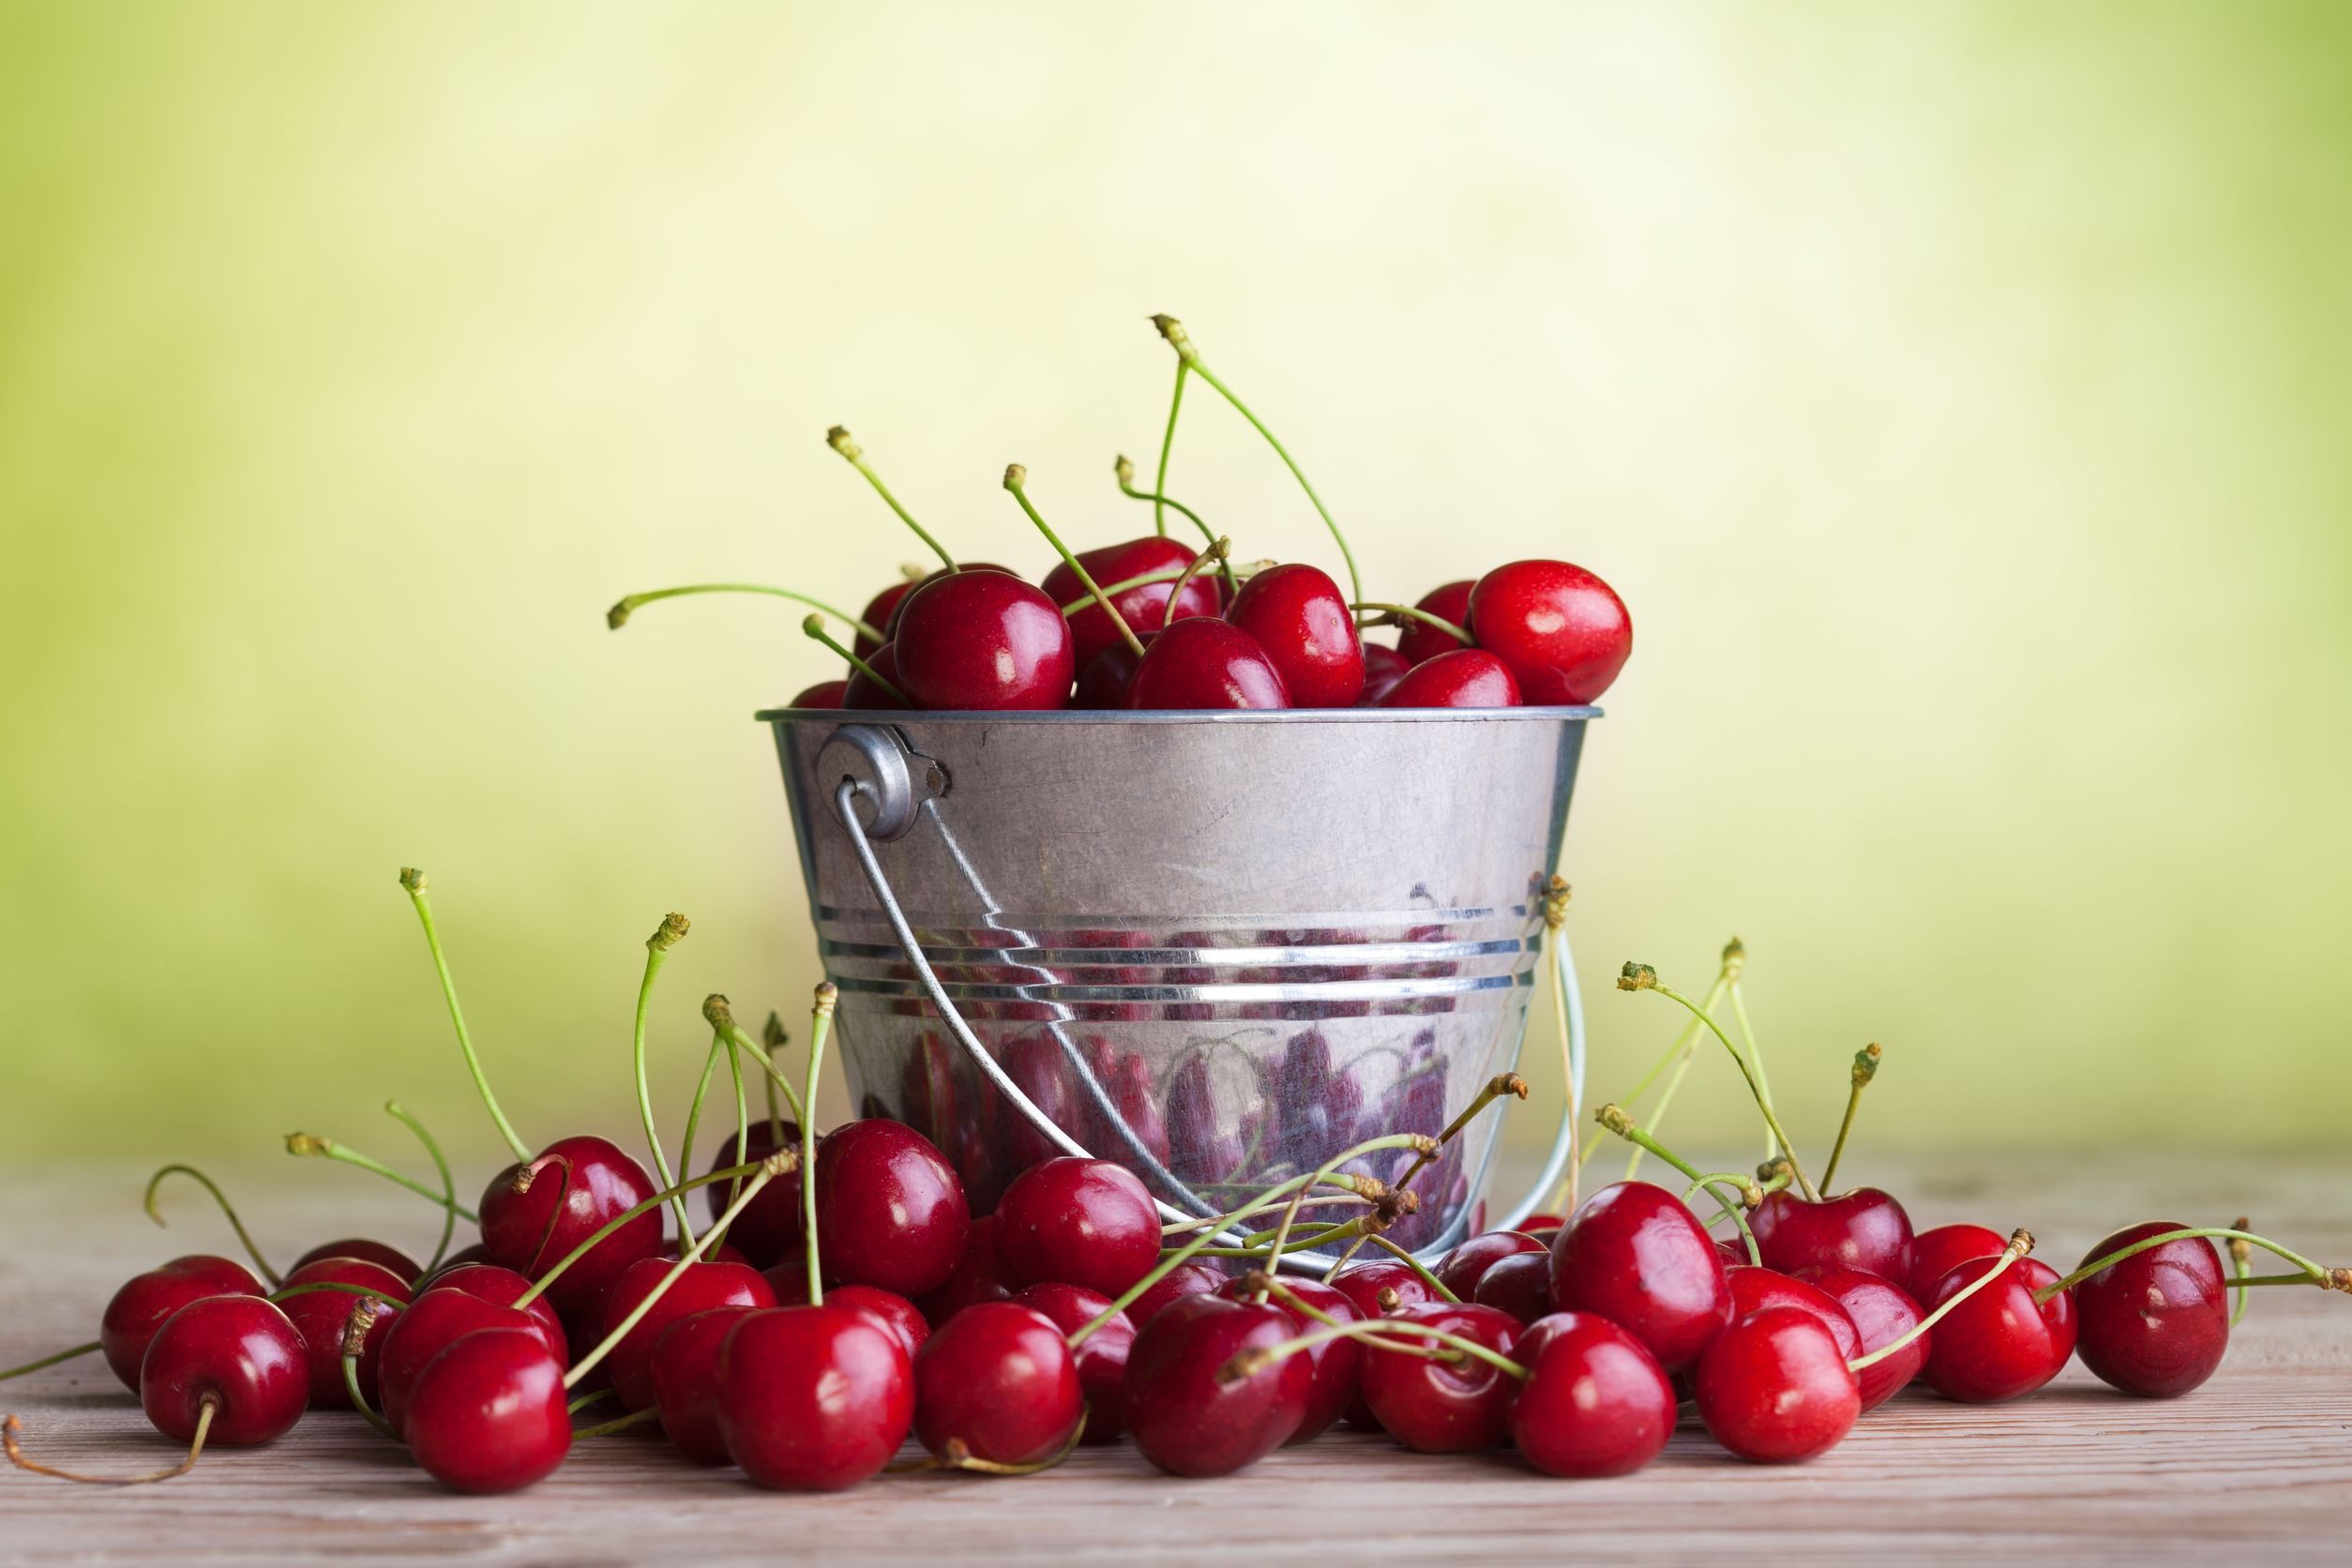 10 Amazing Reasons to Eat Cherries